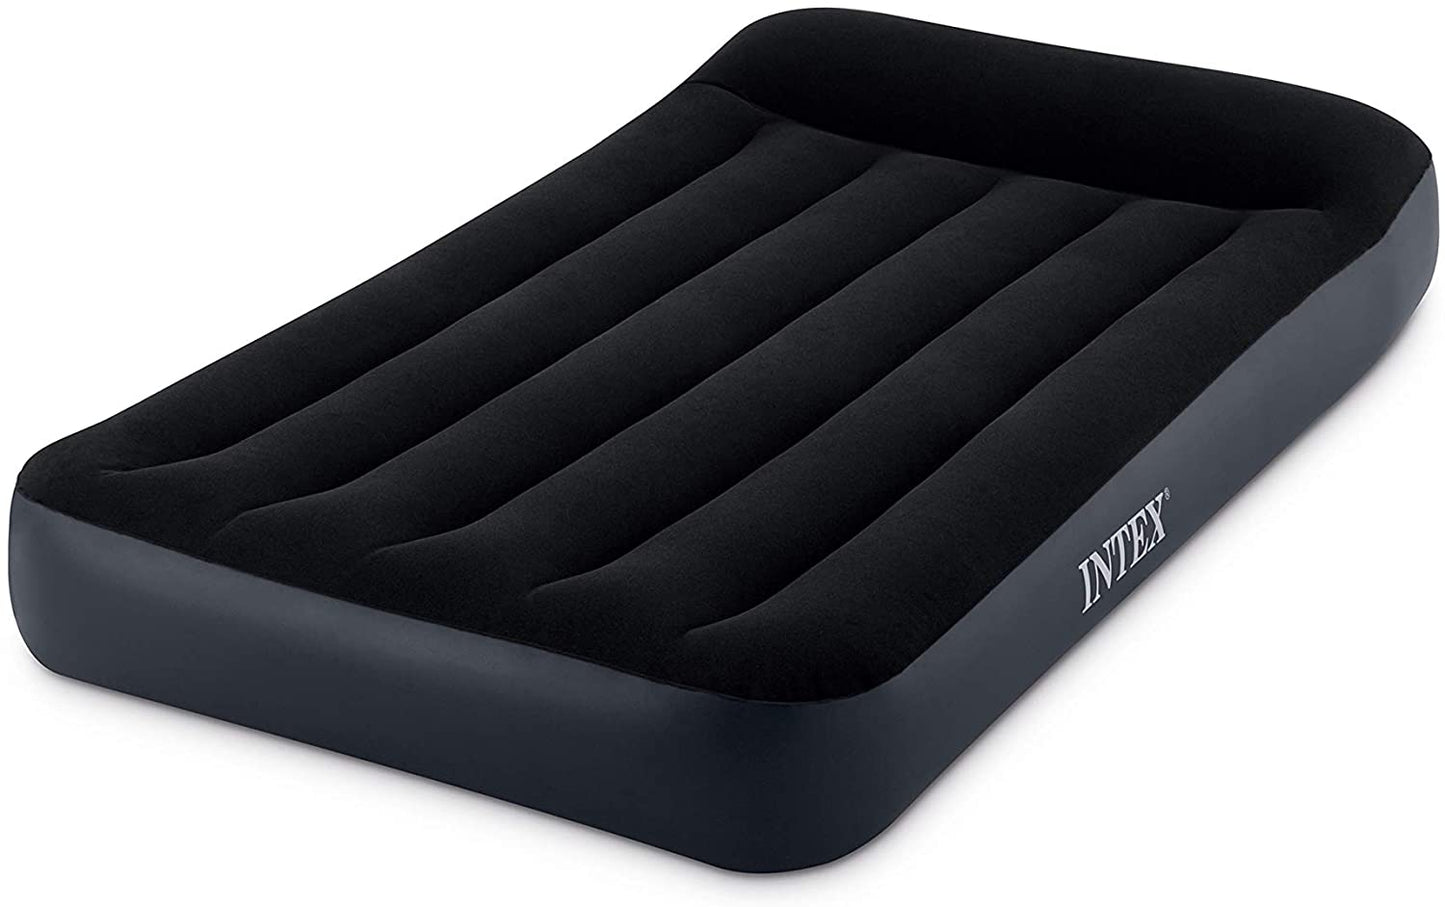 Intex Dura Beam Standard Series Pillow Rest Classic Air Mattress